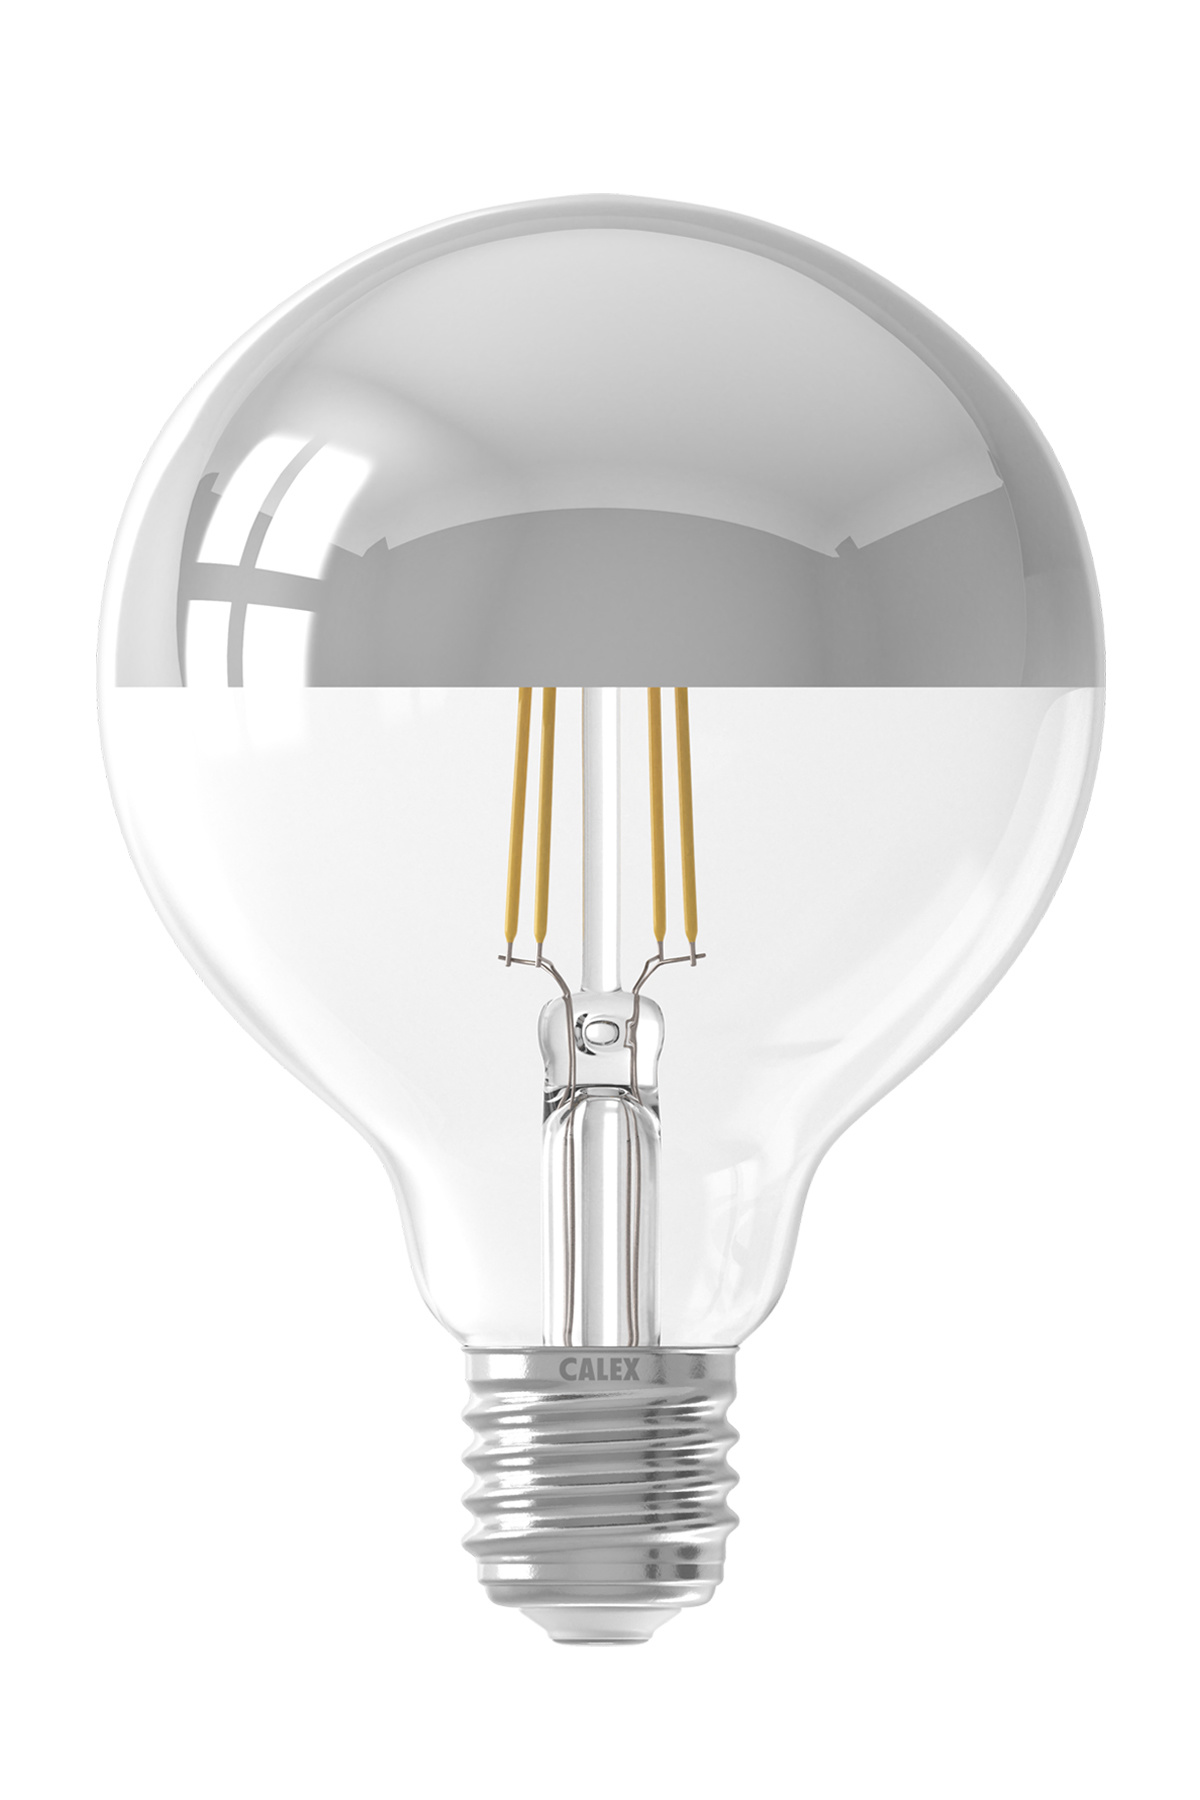 Roman daar ben ik het mee eens deur Calex LED Filament - Kopspiegel Globe G95 - E27 - Dimbaar | Zlilver - Kynda  Light